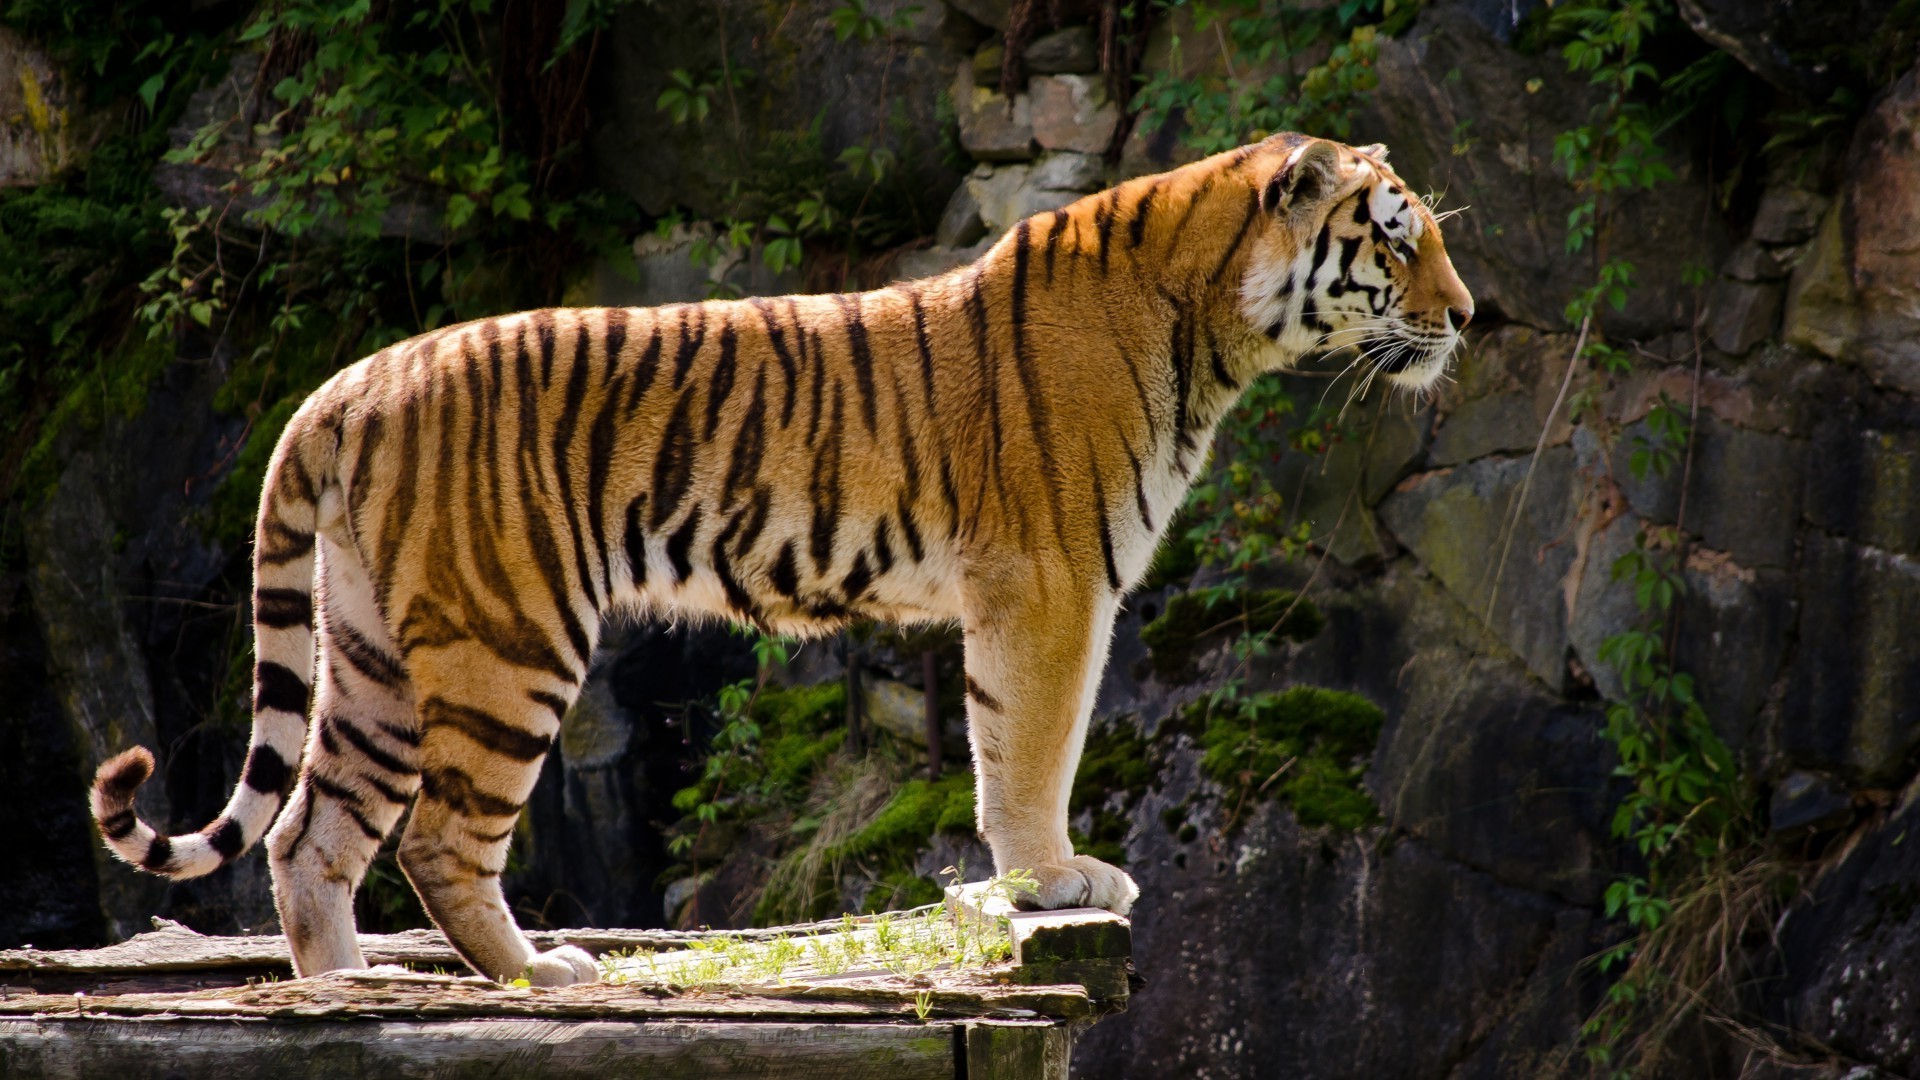 тигры тигр дикой природы кошка млекопитающее зоопарк джунгли животное охотник дикий хищник природа сафари опасность большой мясоед мех глядя охота полоса портрет